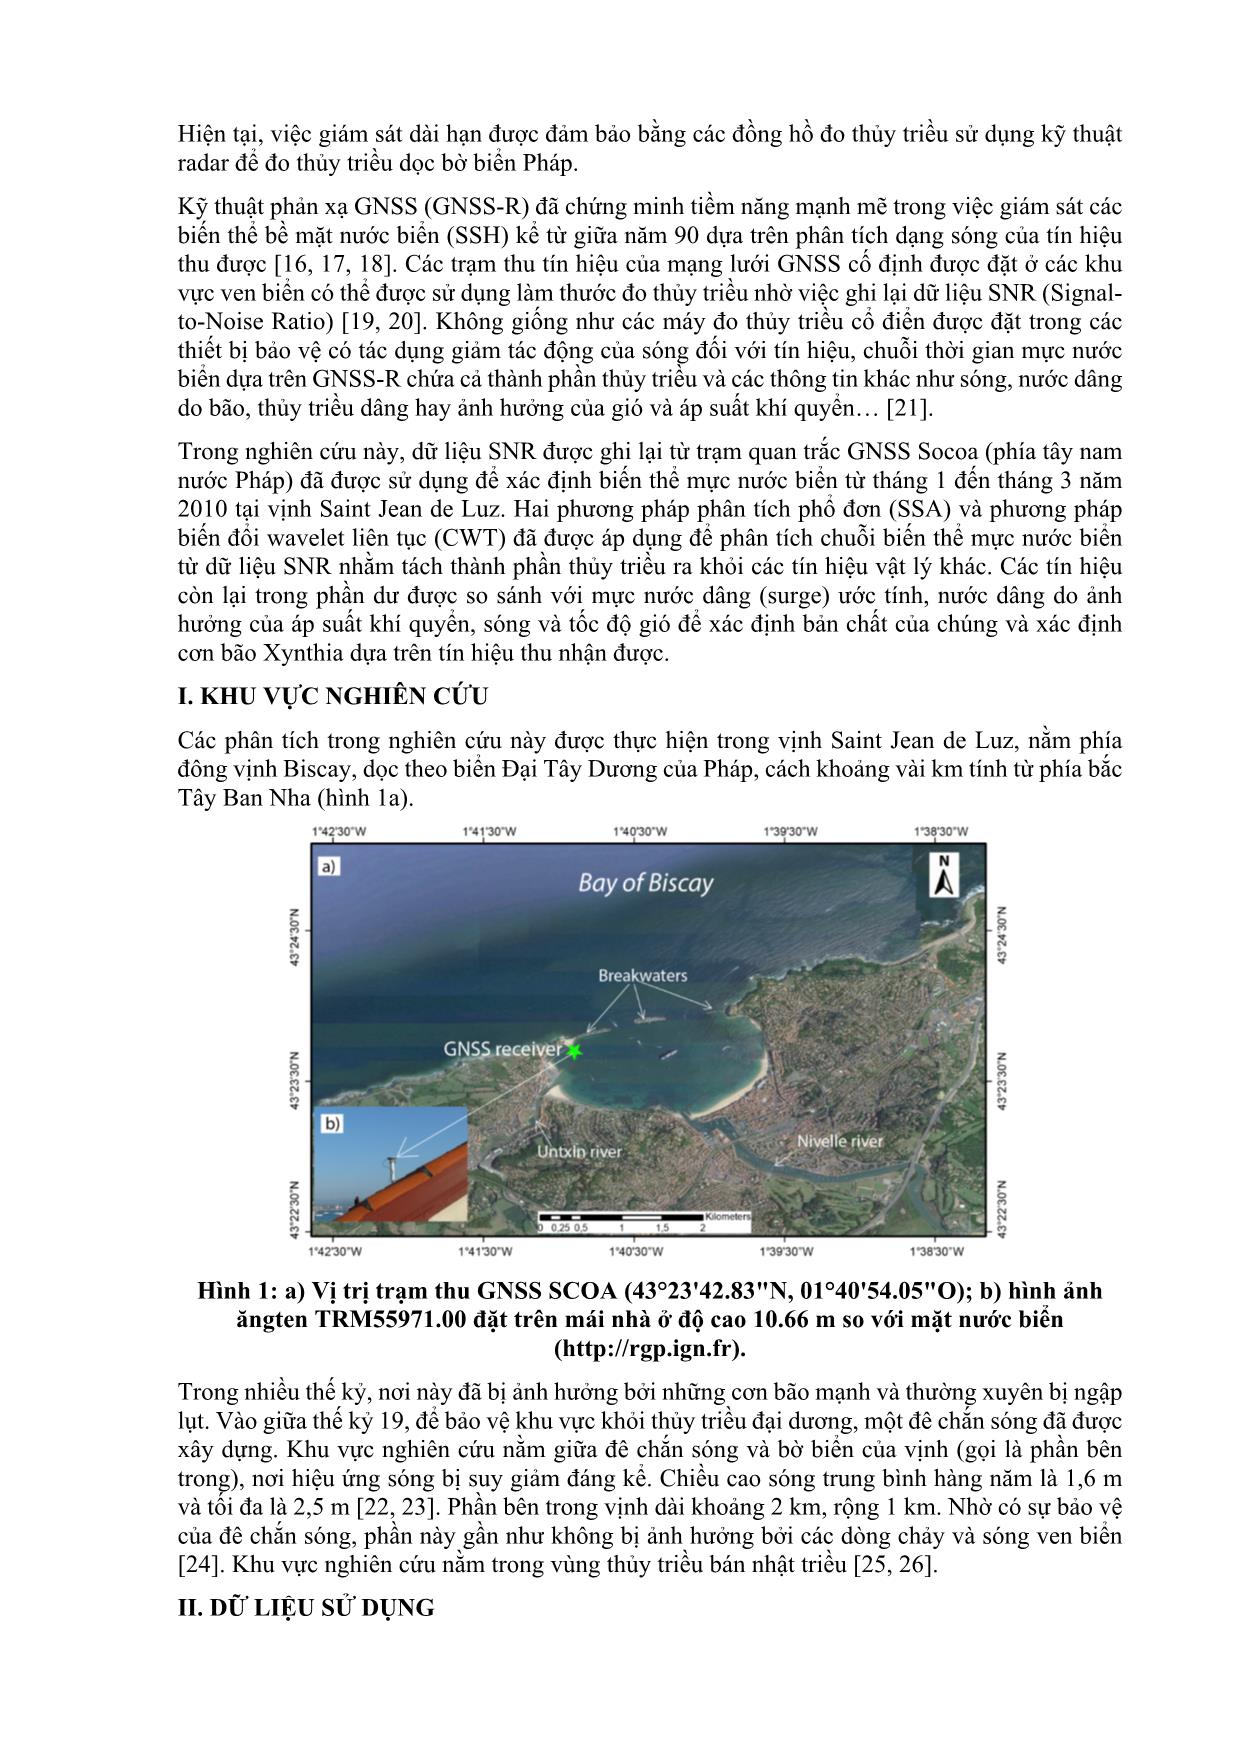 Ứng dụng công nghệ GNSS-R (phản xạ GNSS) để phát hiện các sự kiện thủy văn cực đoan (ví dụ cơn bão Xynthia năm 2010 tại Pháp) trang 2